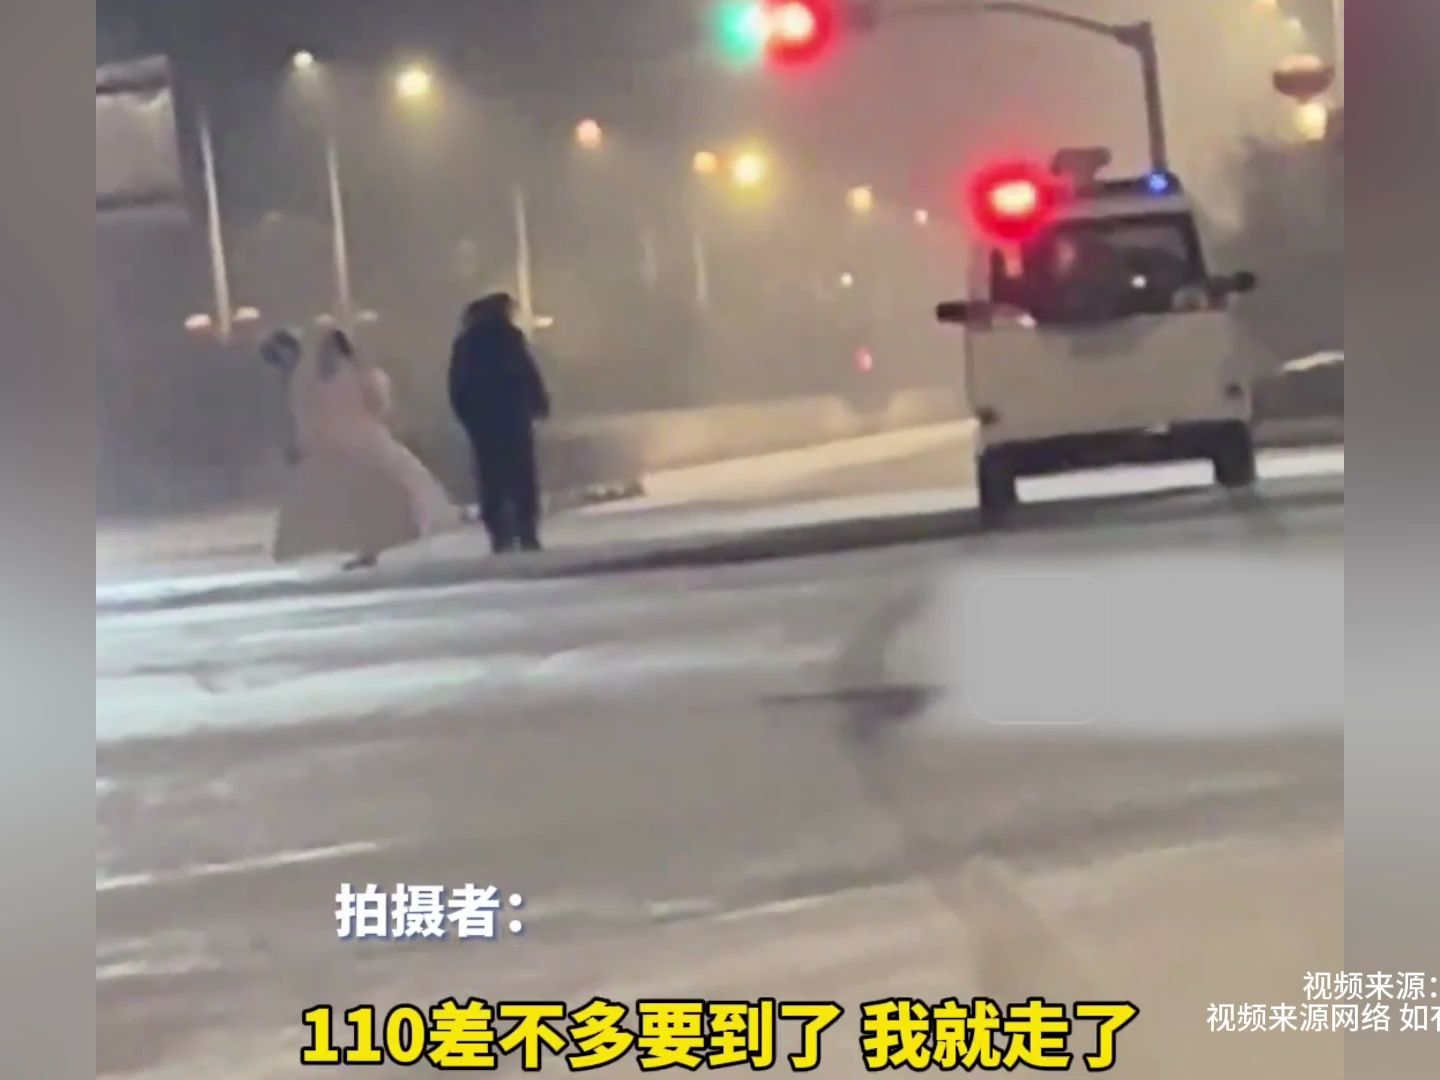 雪夜女孩穿婚纱独自走在街头，路人想拉其上车取暖被拒：看着心疼